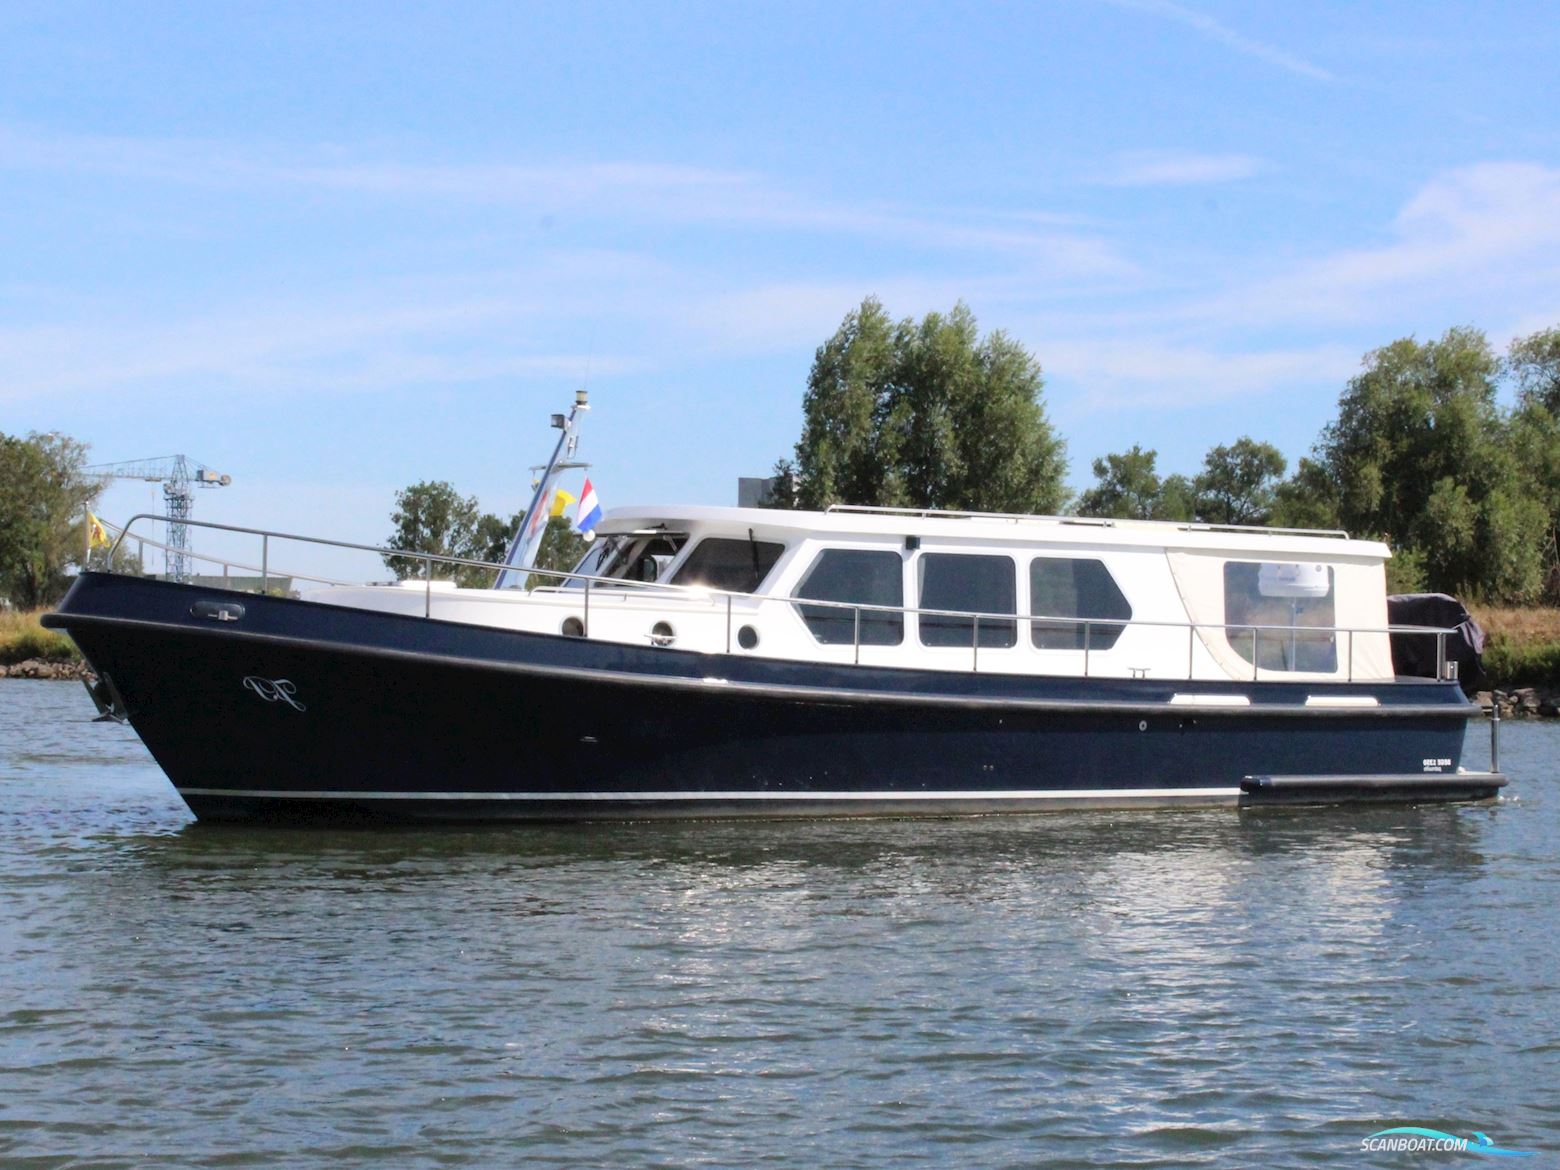 Bege Patrouille 13.50 Motorbåt 2017, med Yanmar motor, Holland